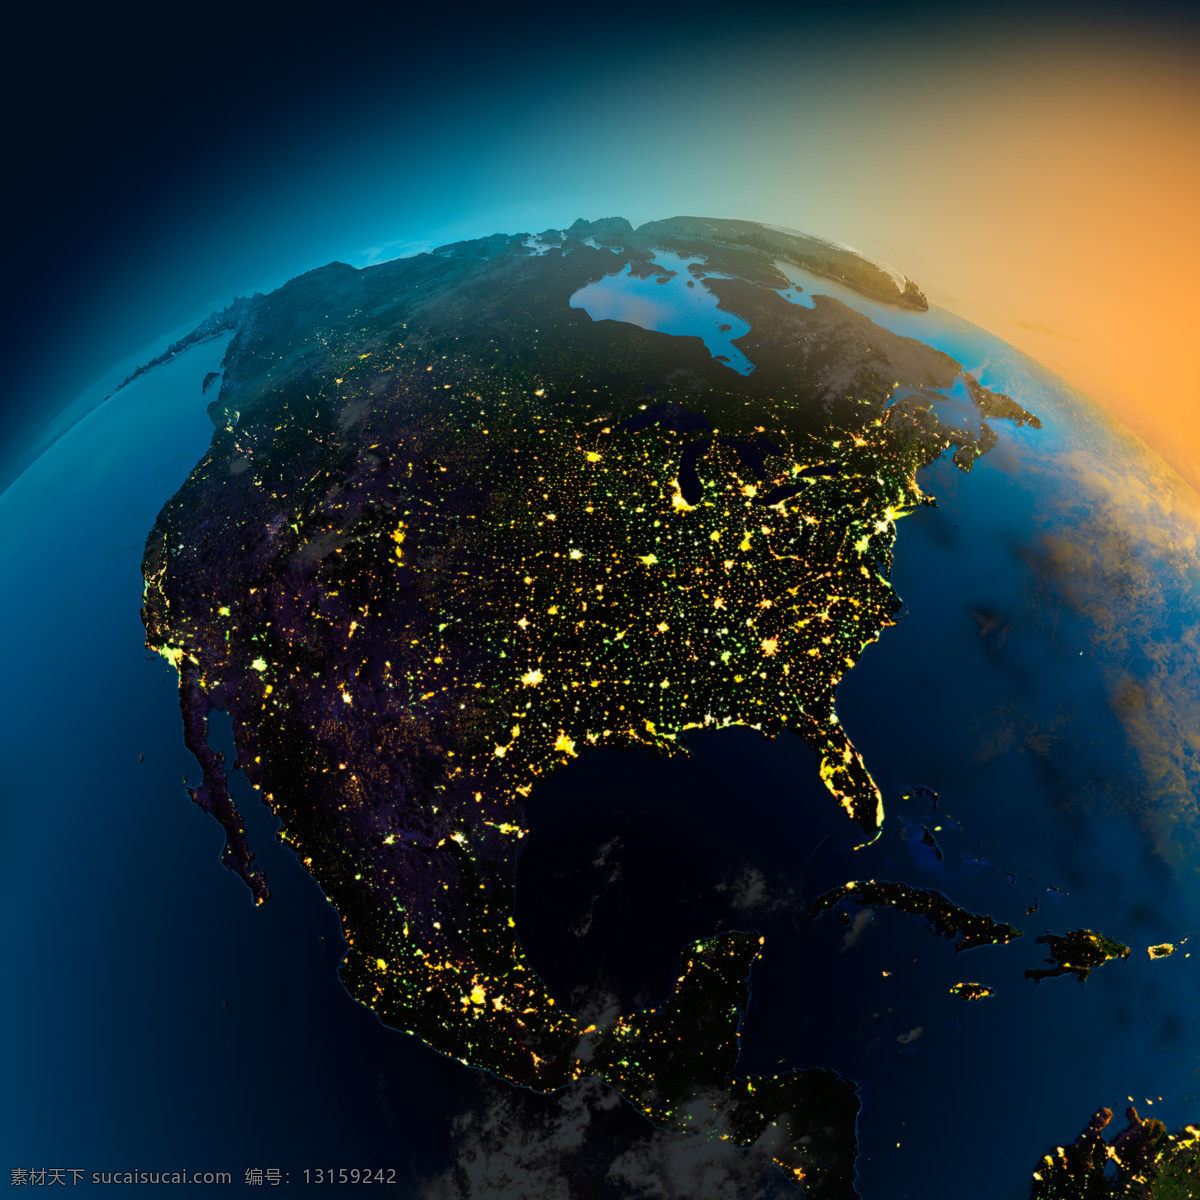 地球 夜景 地球模型 地球素材 地球背景 立体图案 星球 地图 环保 创意图片 其他类别 环境家居 黑色